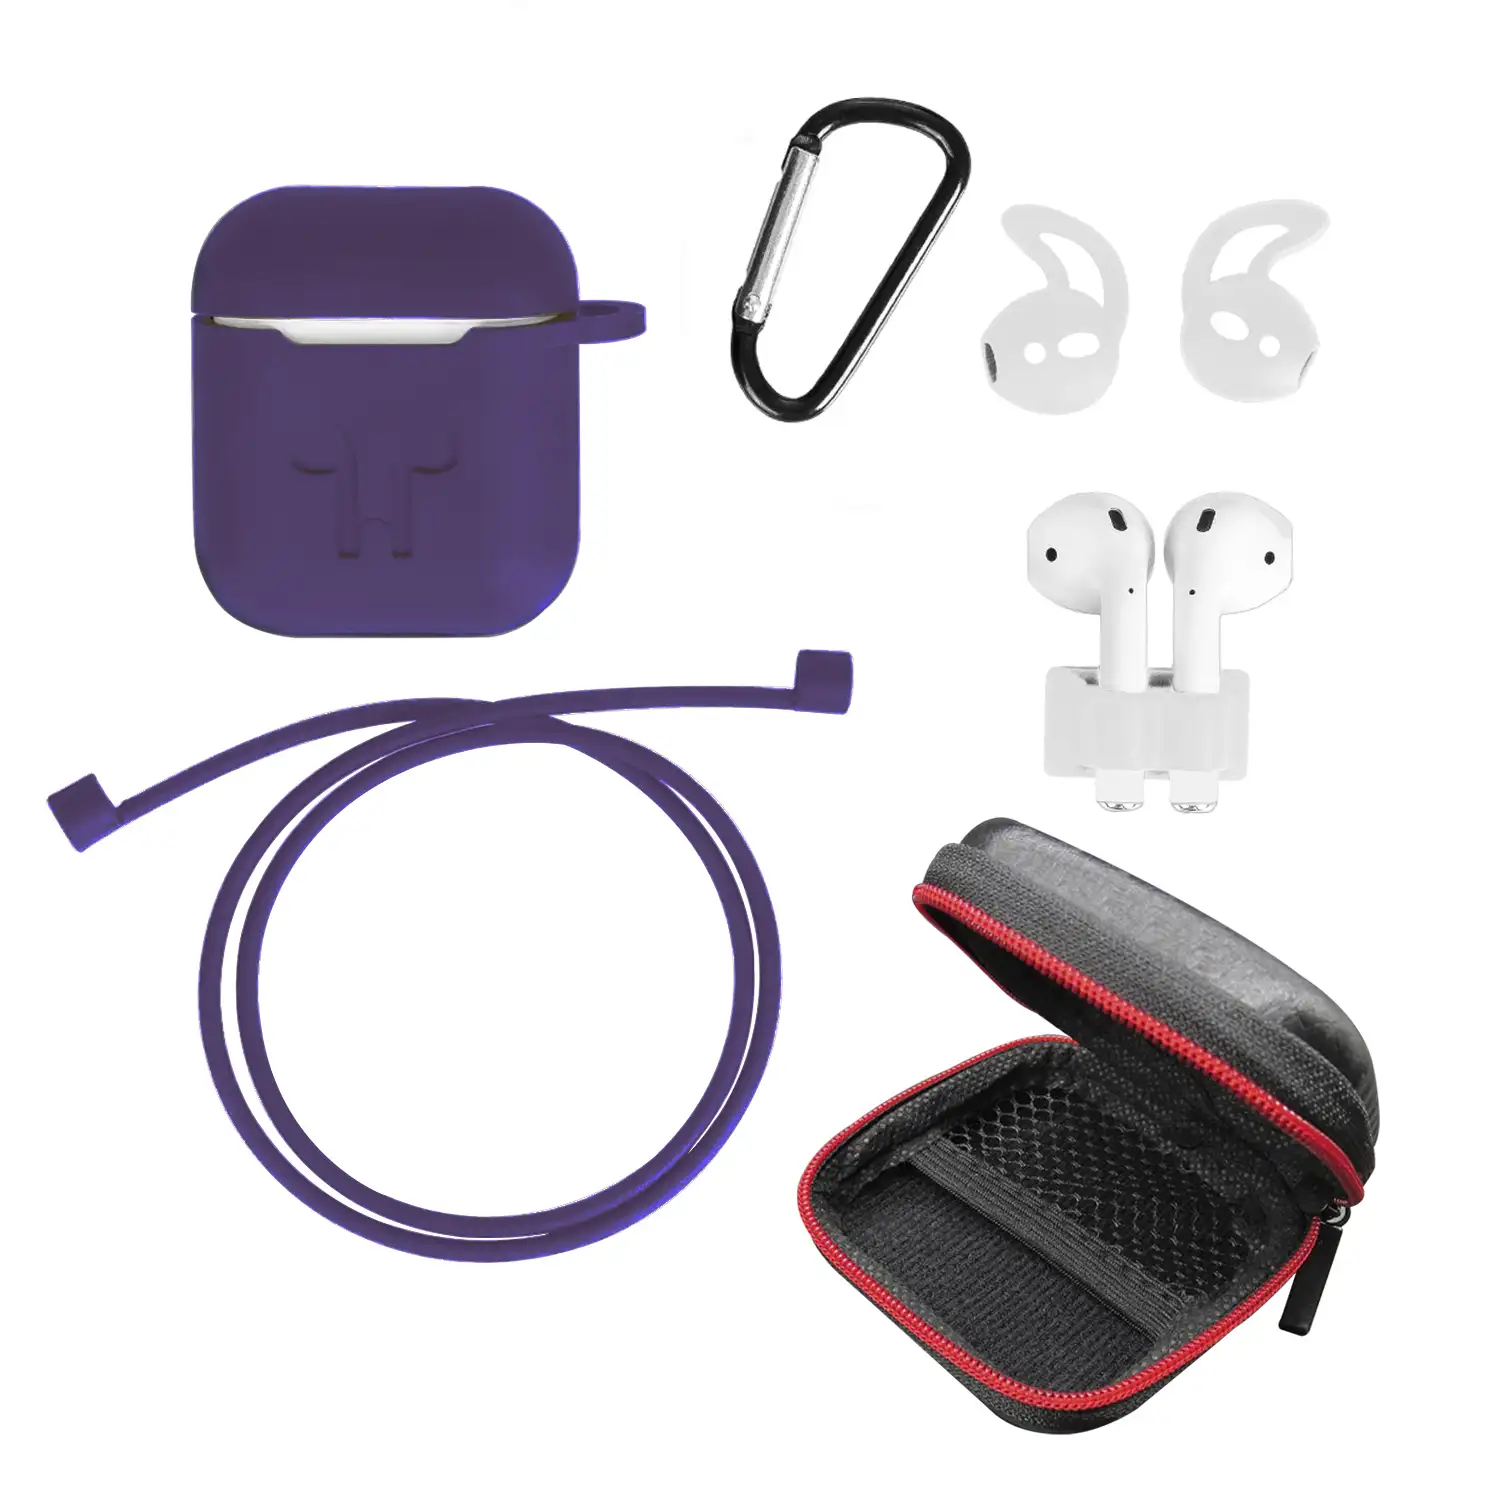 Pack de accesorios para Airpods, con funda semirrígida, carcasa para base de carga, mosquetón, almohadillas, correa y enganche para el reloj.